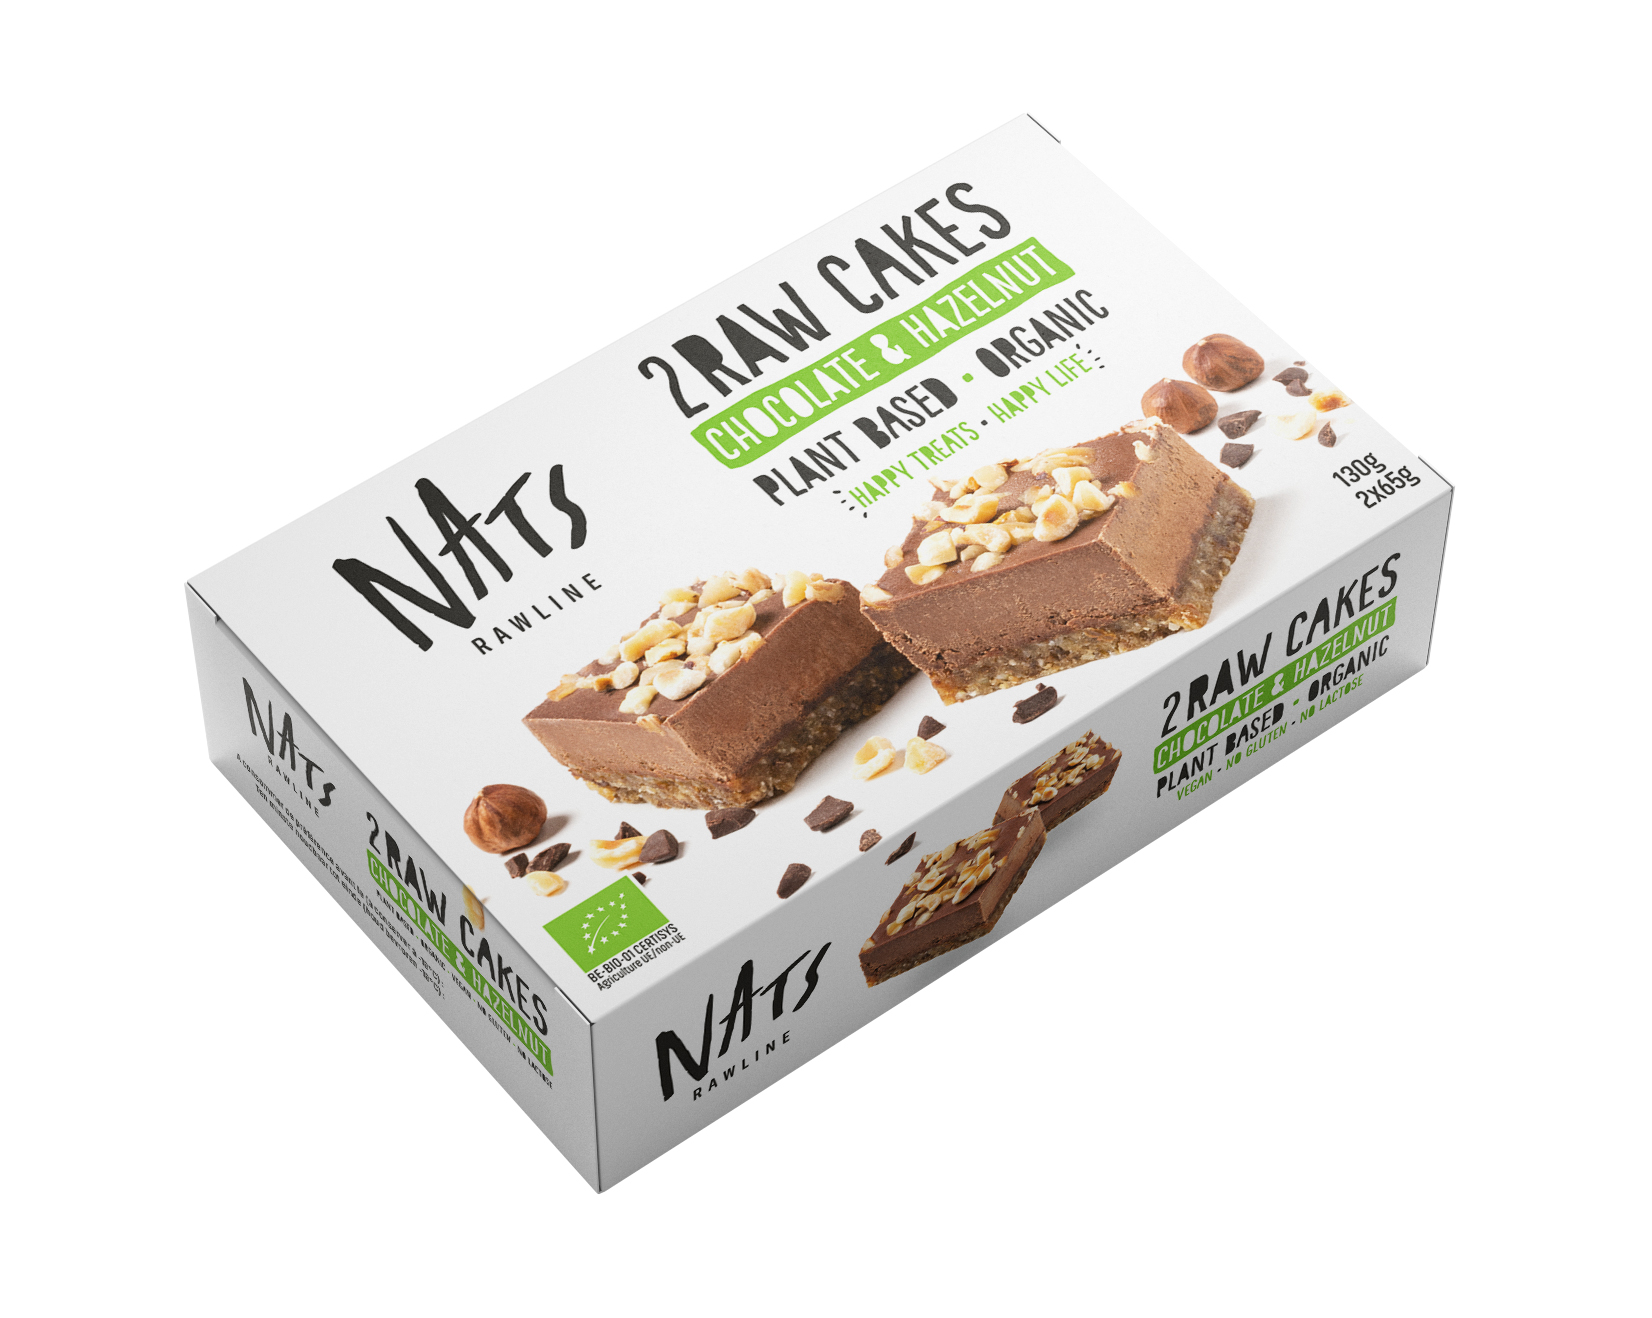 Nats Raw cake chocolat & noisettes bio 130g